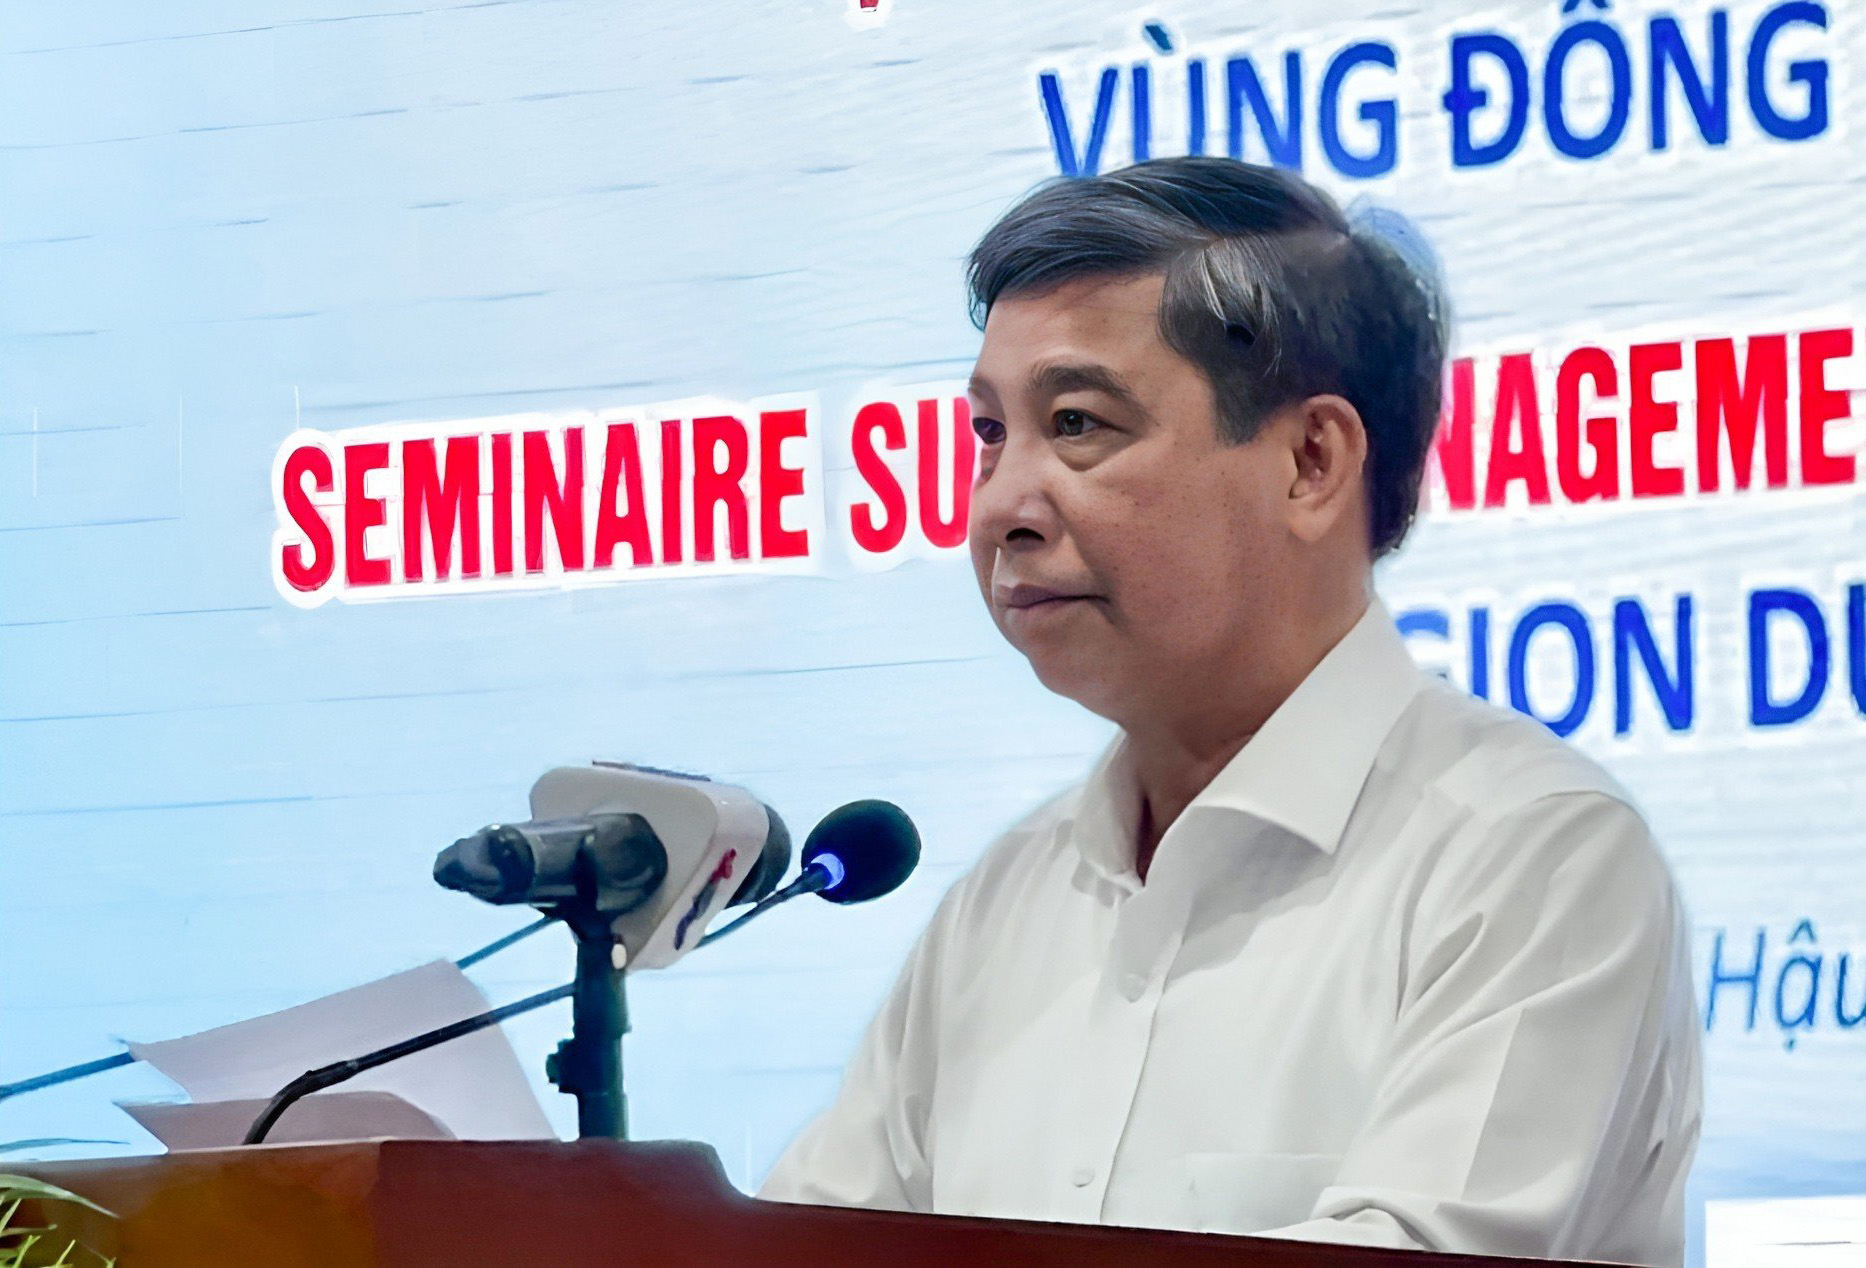 Đồng chí Đồng Văn Thanh, chủ tịch UBND tỉnh Hậu Giang pát biểu tại Hội thảo.